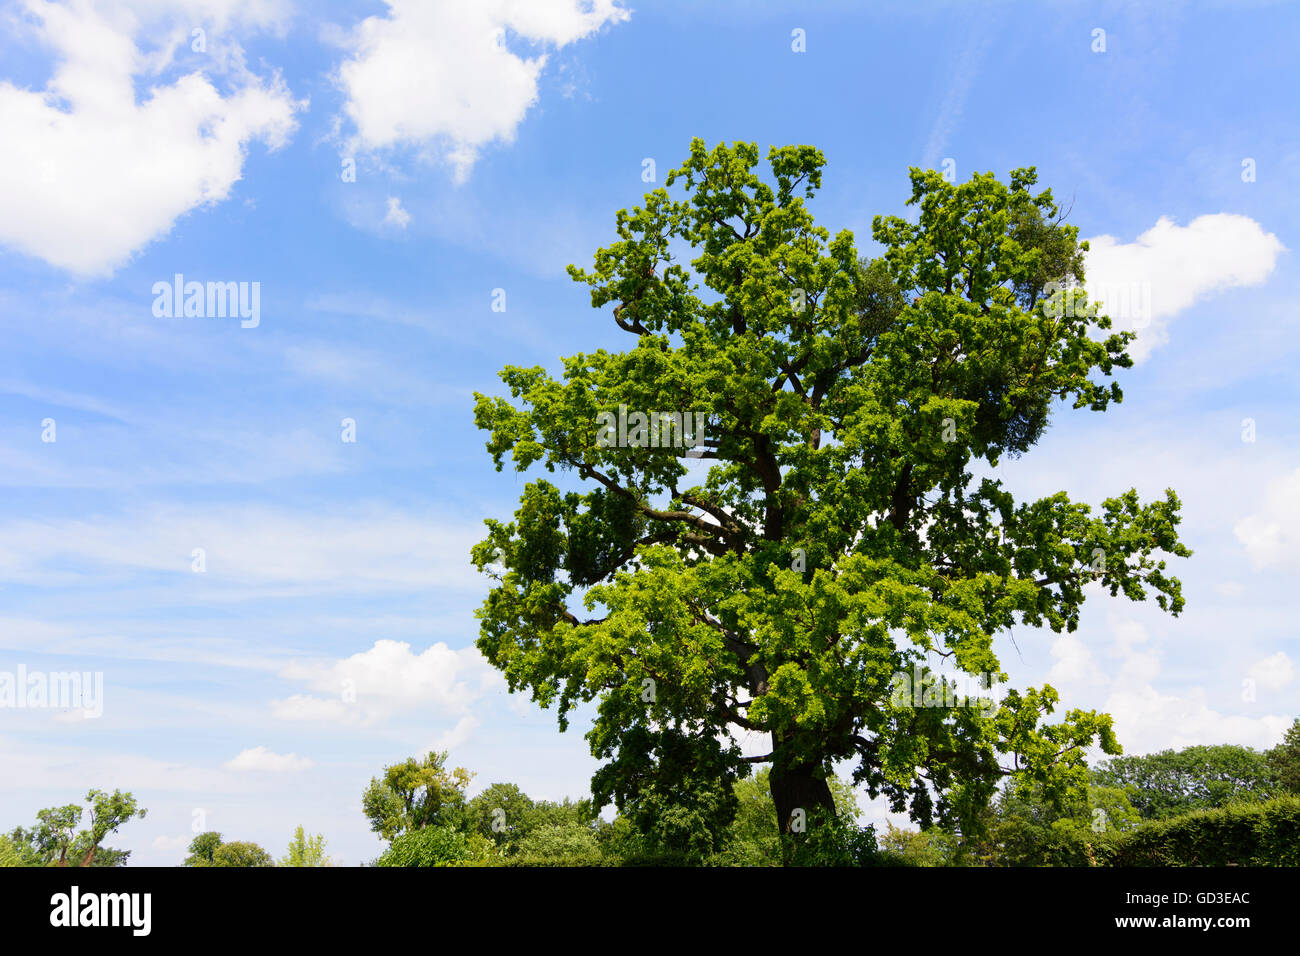 English encino ( Quercus robur ), Austria, Niederösterreich, Baja Austria Foto de stock